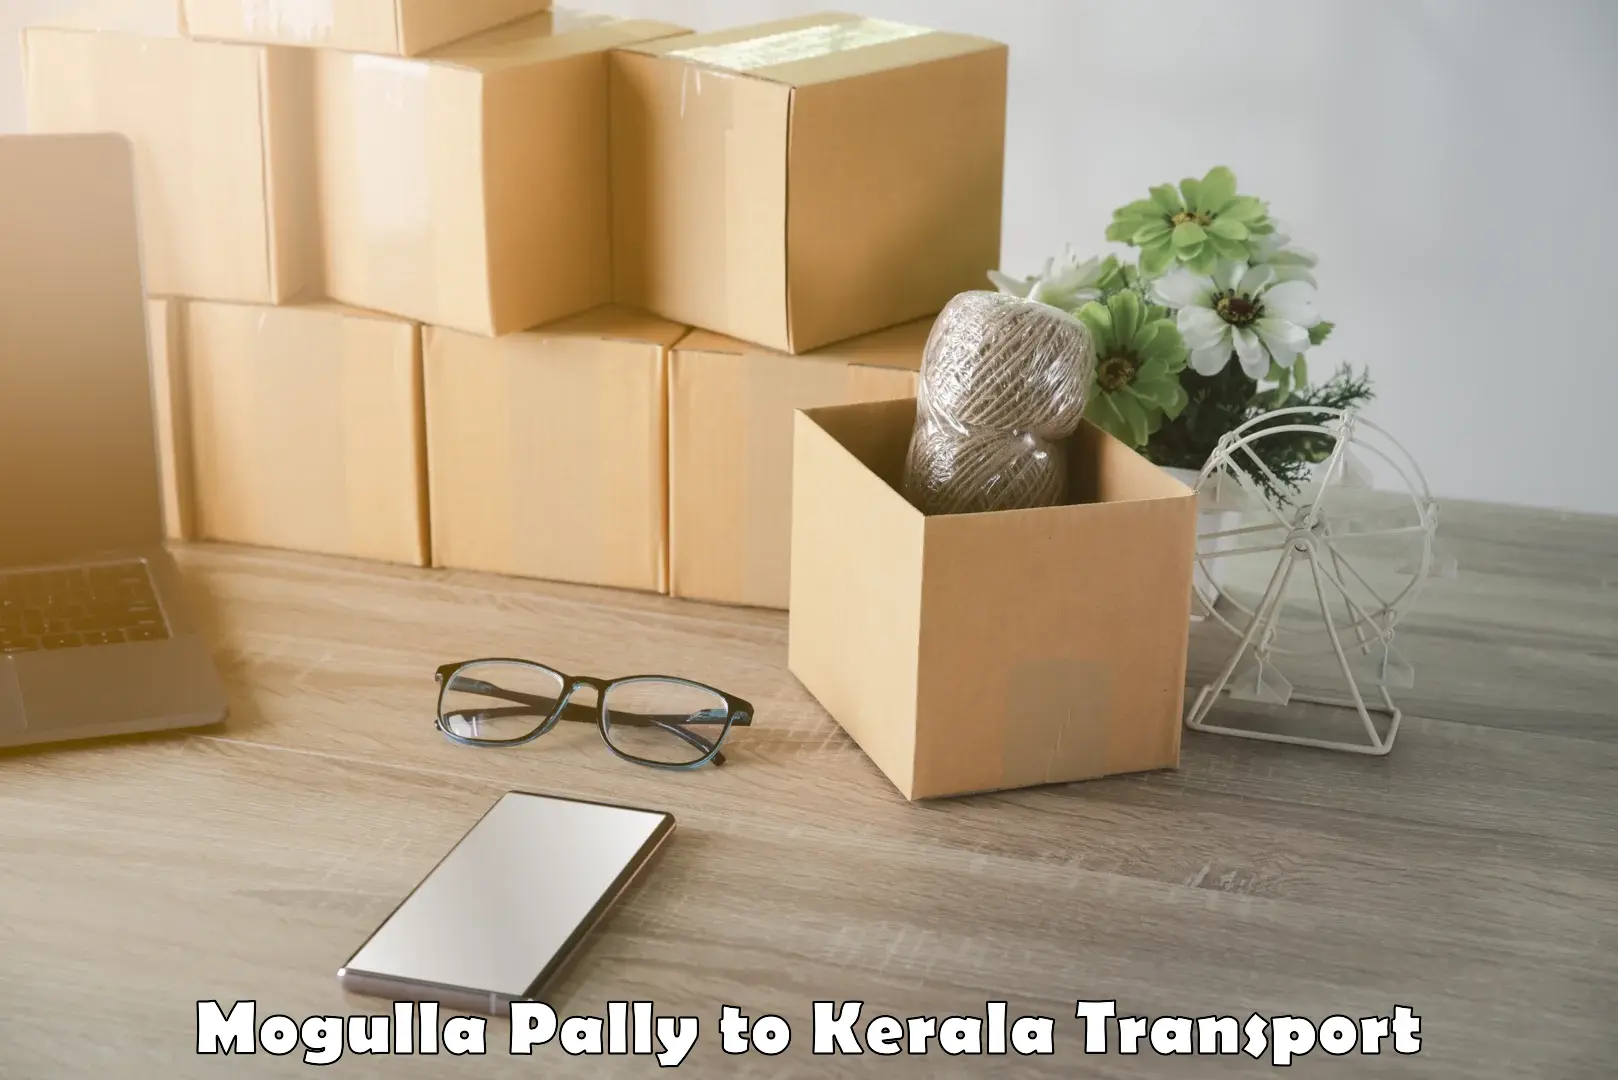 Daily parcel service transport Mogulla Pally to Kadanad